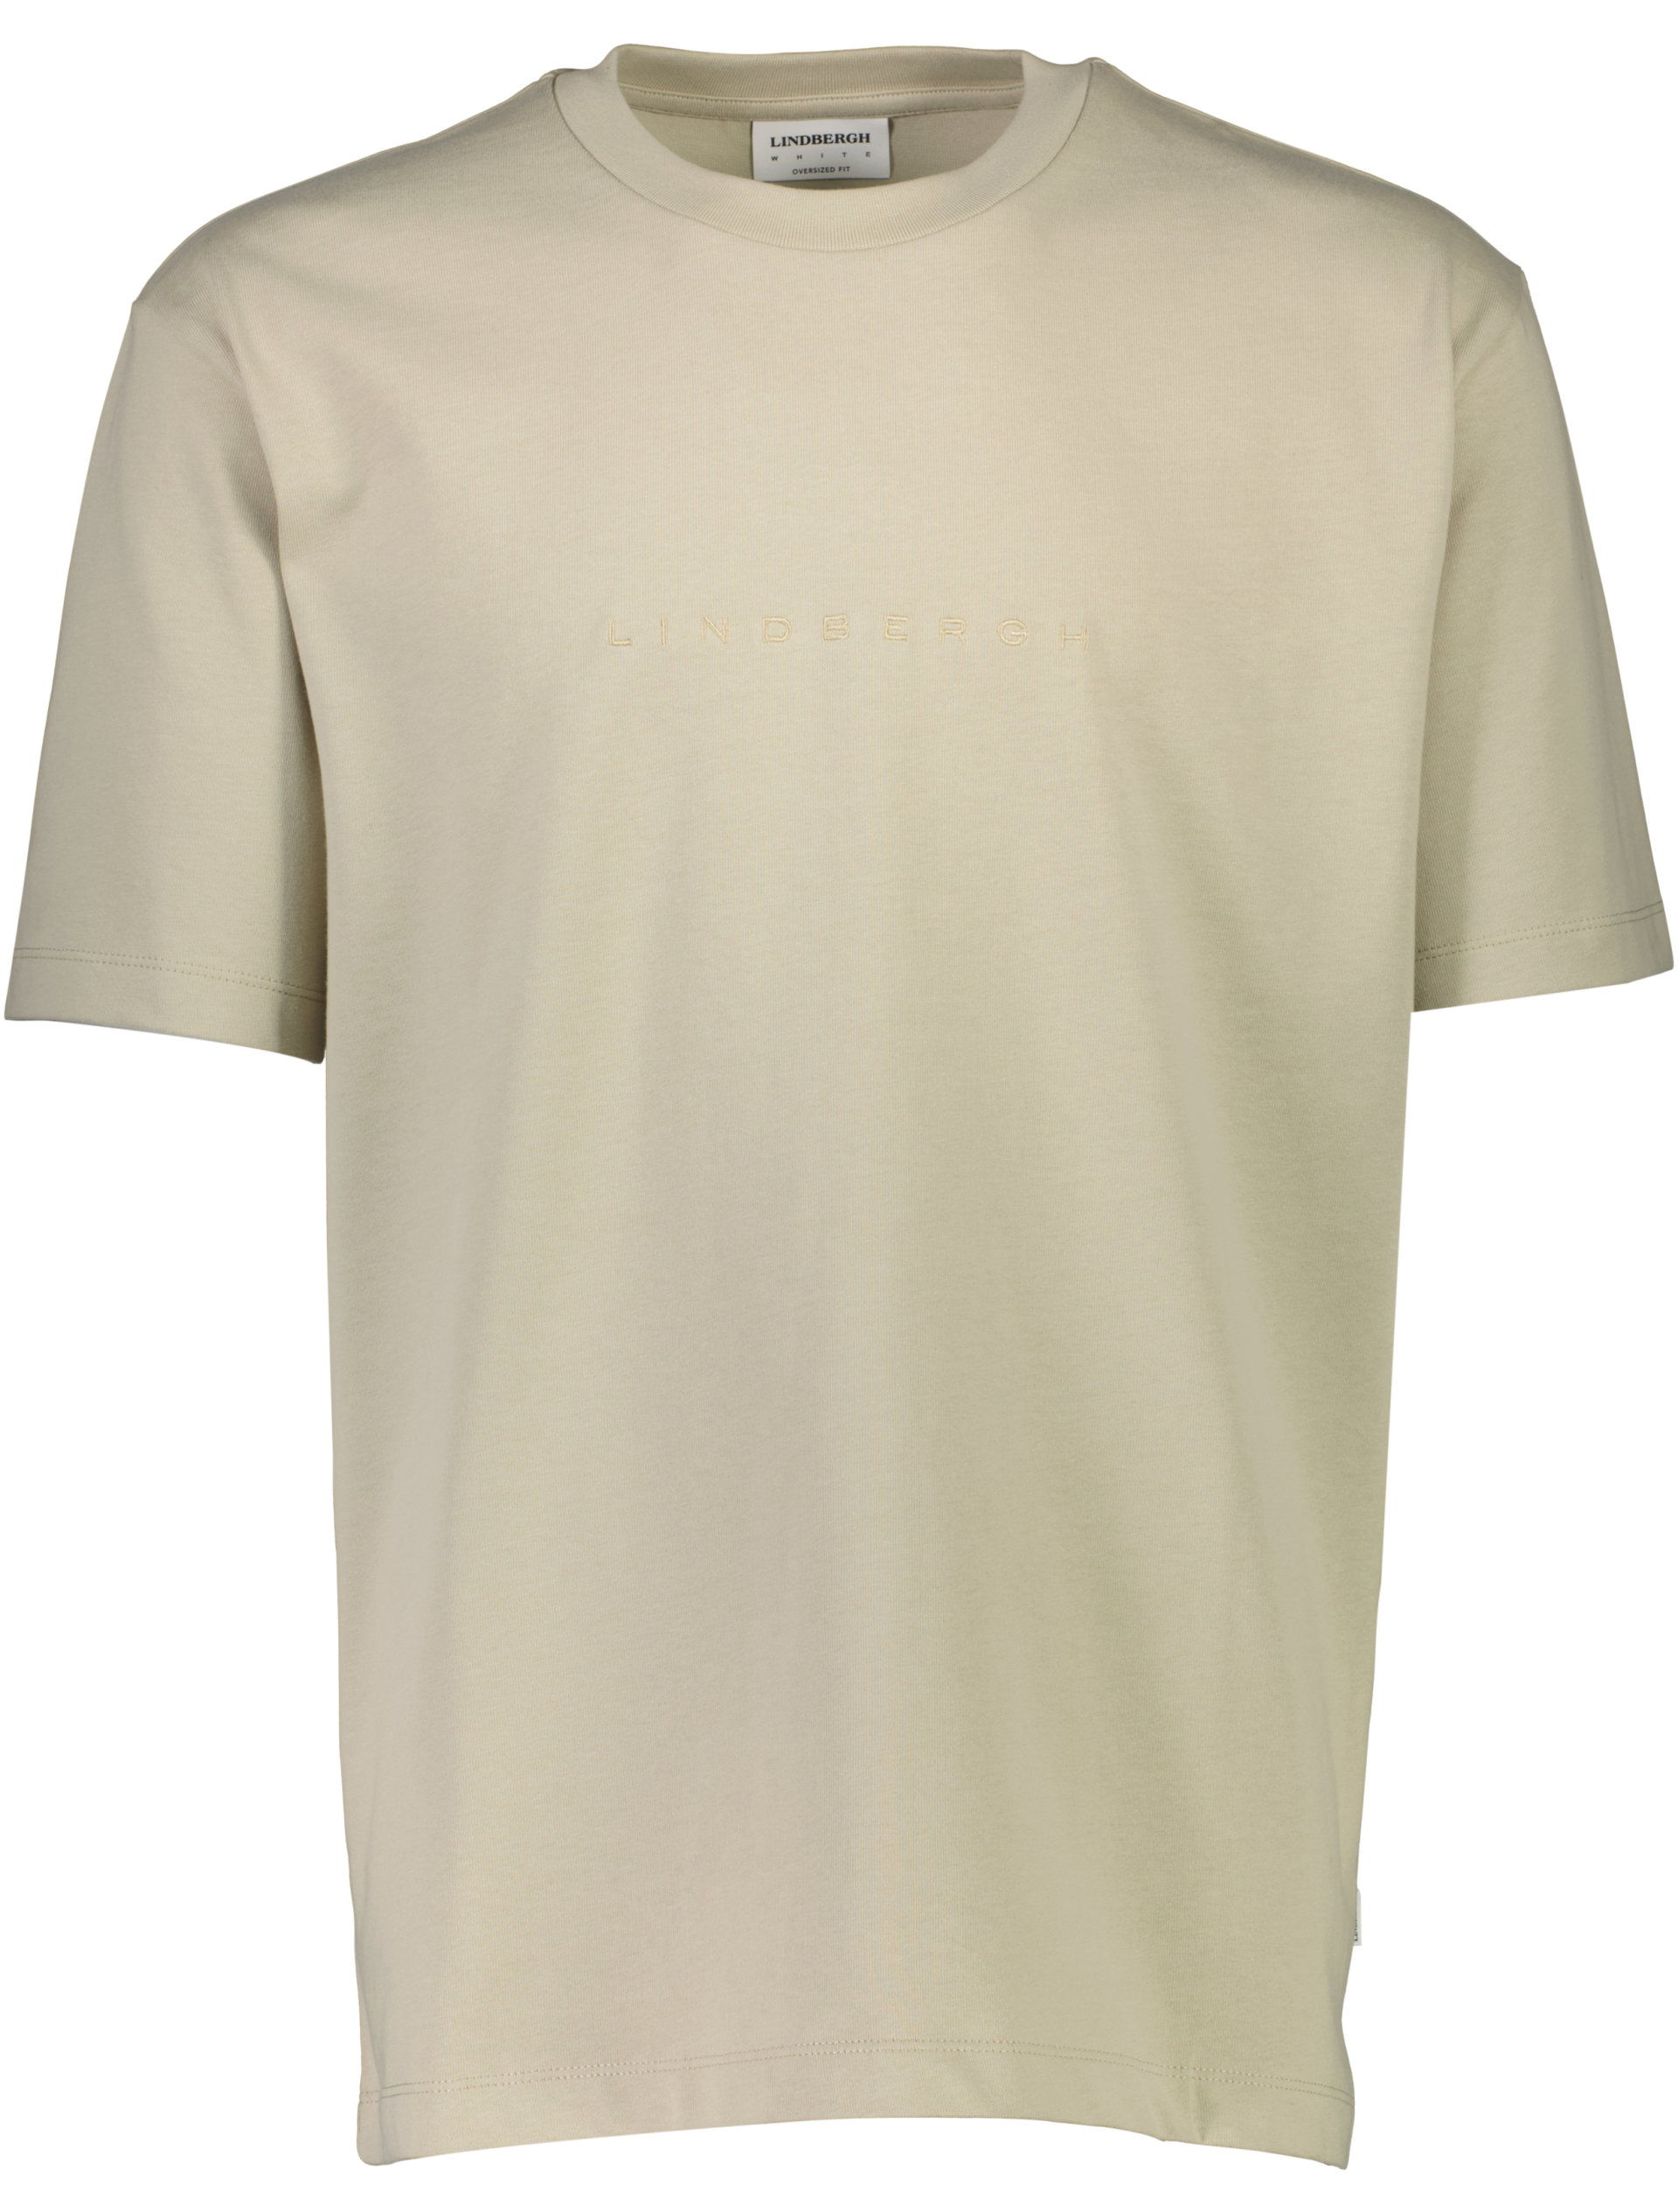 Lindbergh T-shirt grøn / pale army